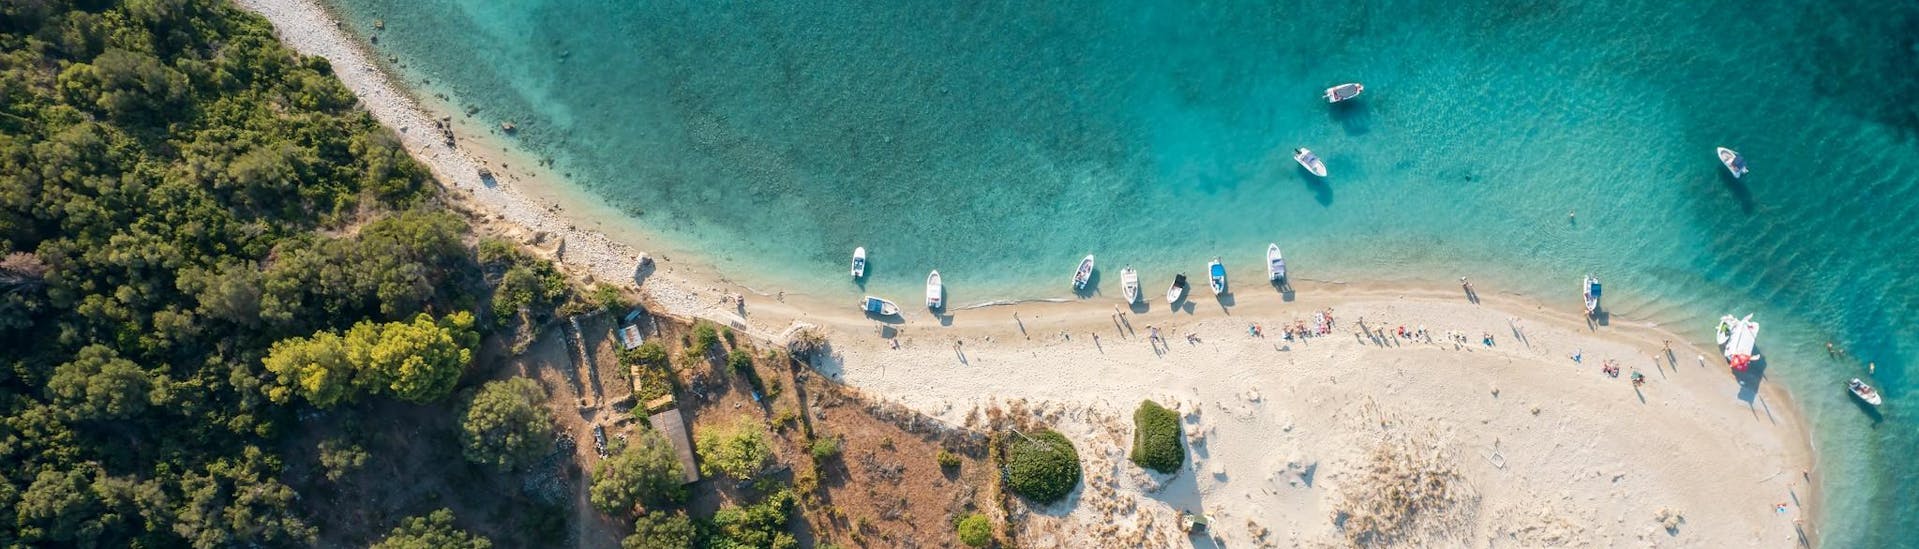 Vista sulla spiaggia di Marathonisi, una splendida località che si può visitare durante una gita in barca a Zante.